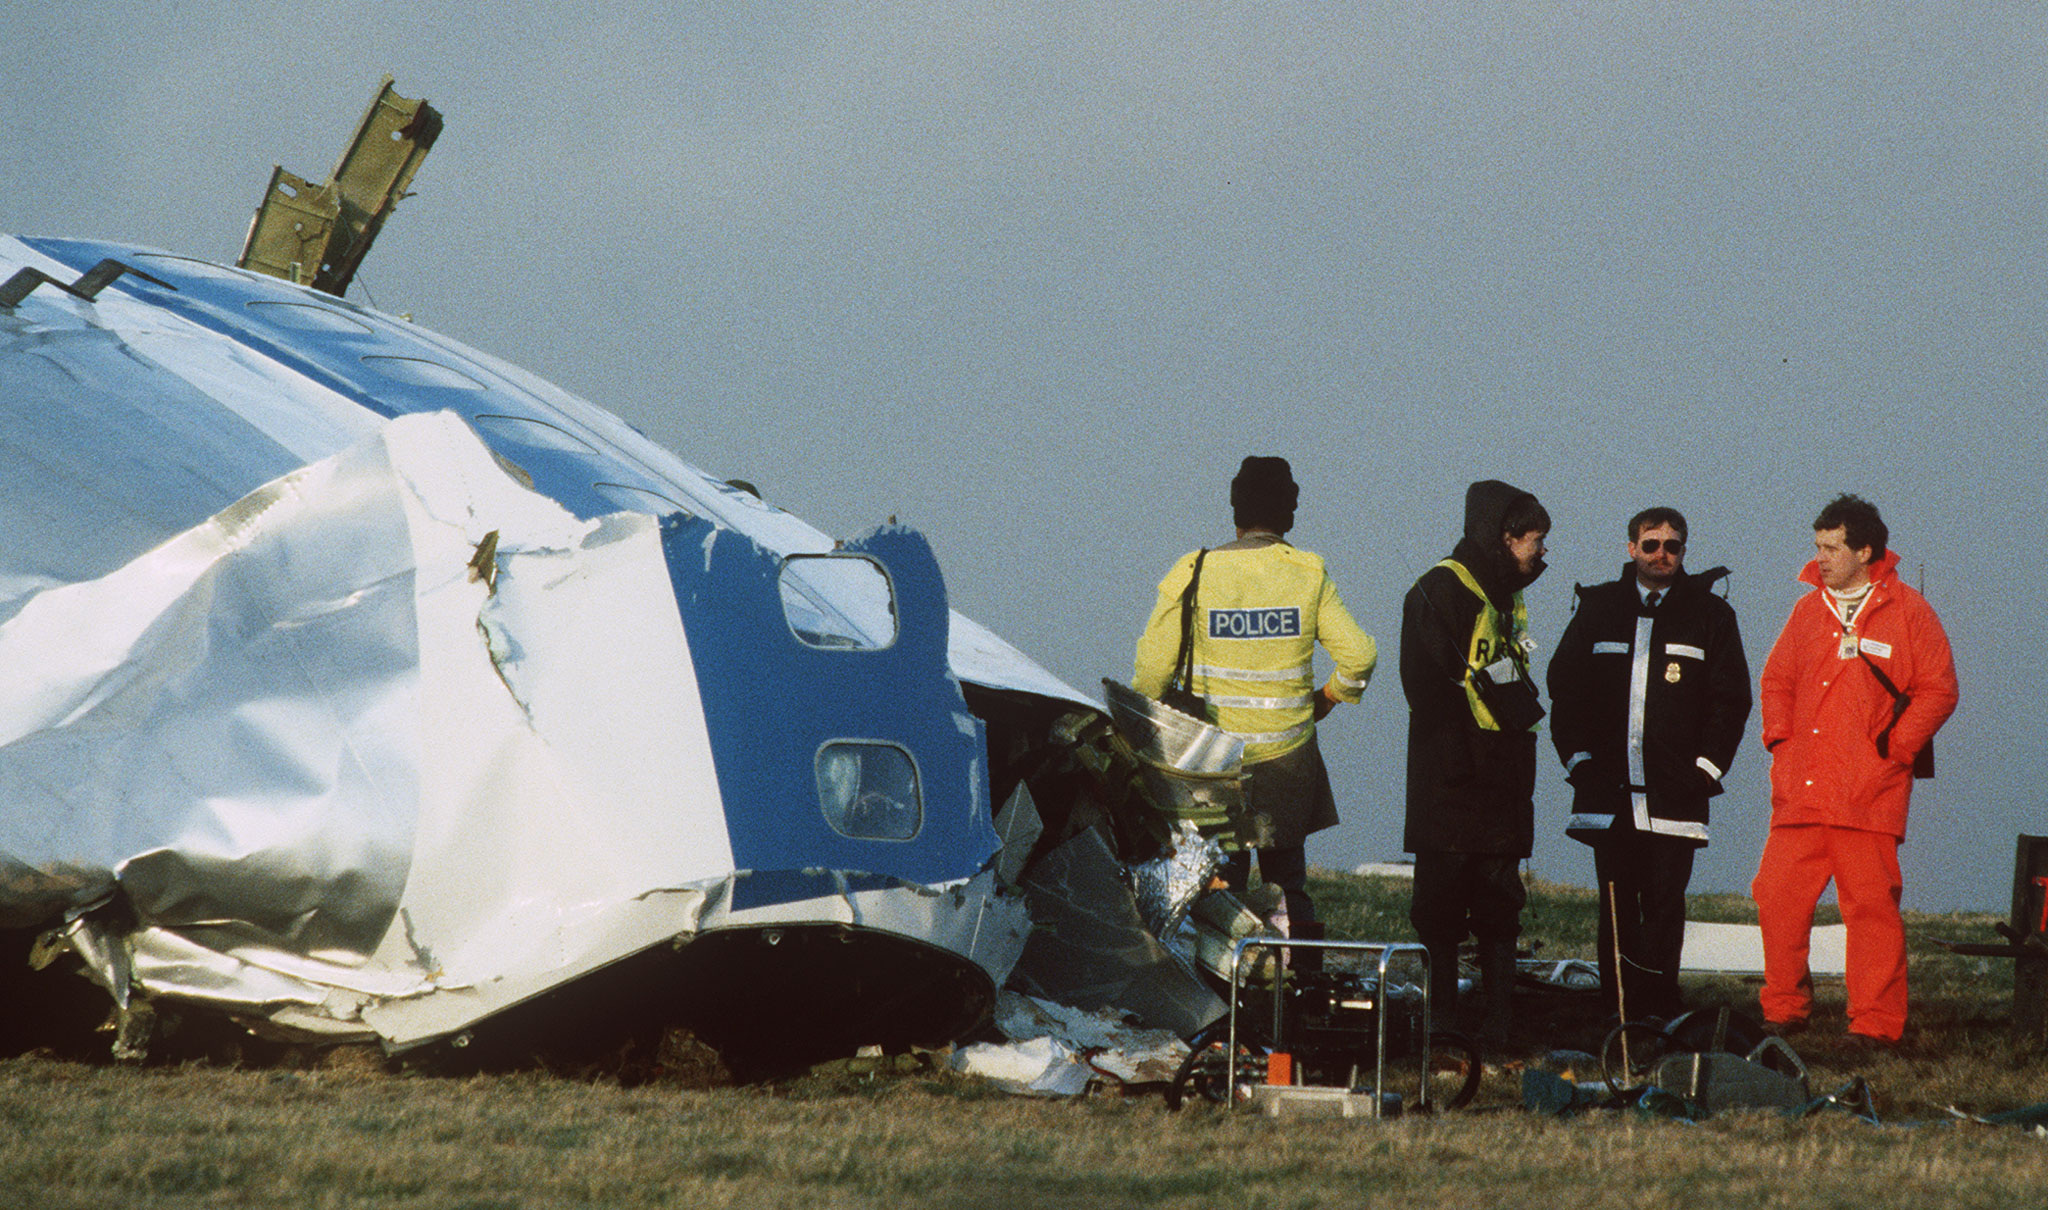 Scottish crash investigators at the site of the Lockerbie Pan Am flight 103 bombing in 1988.